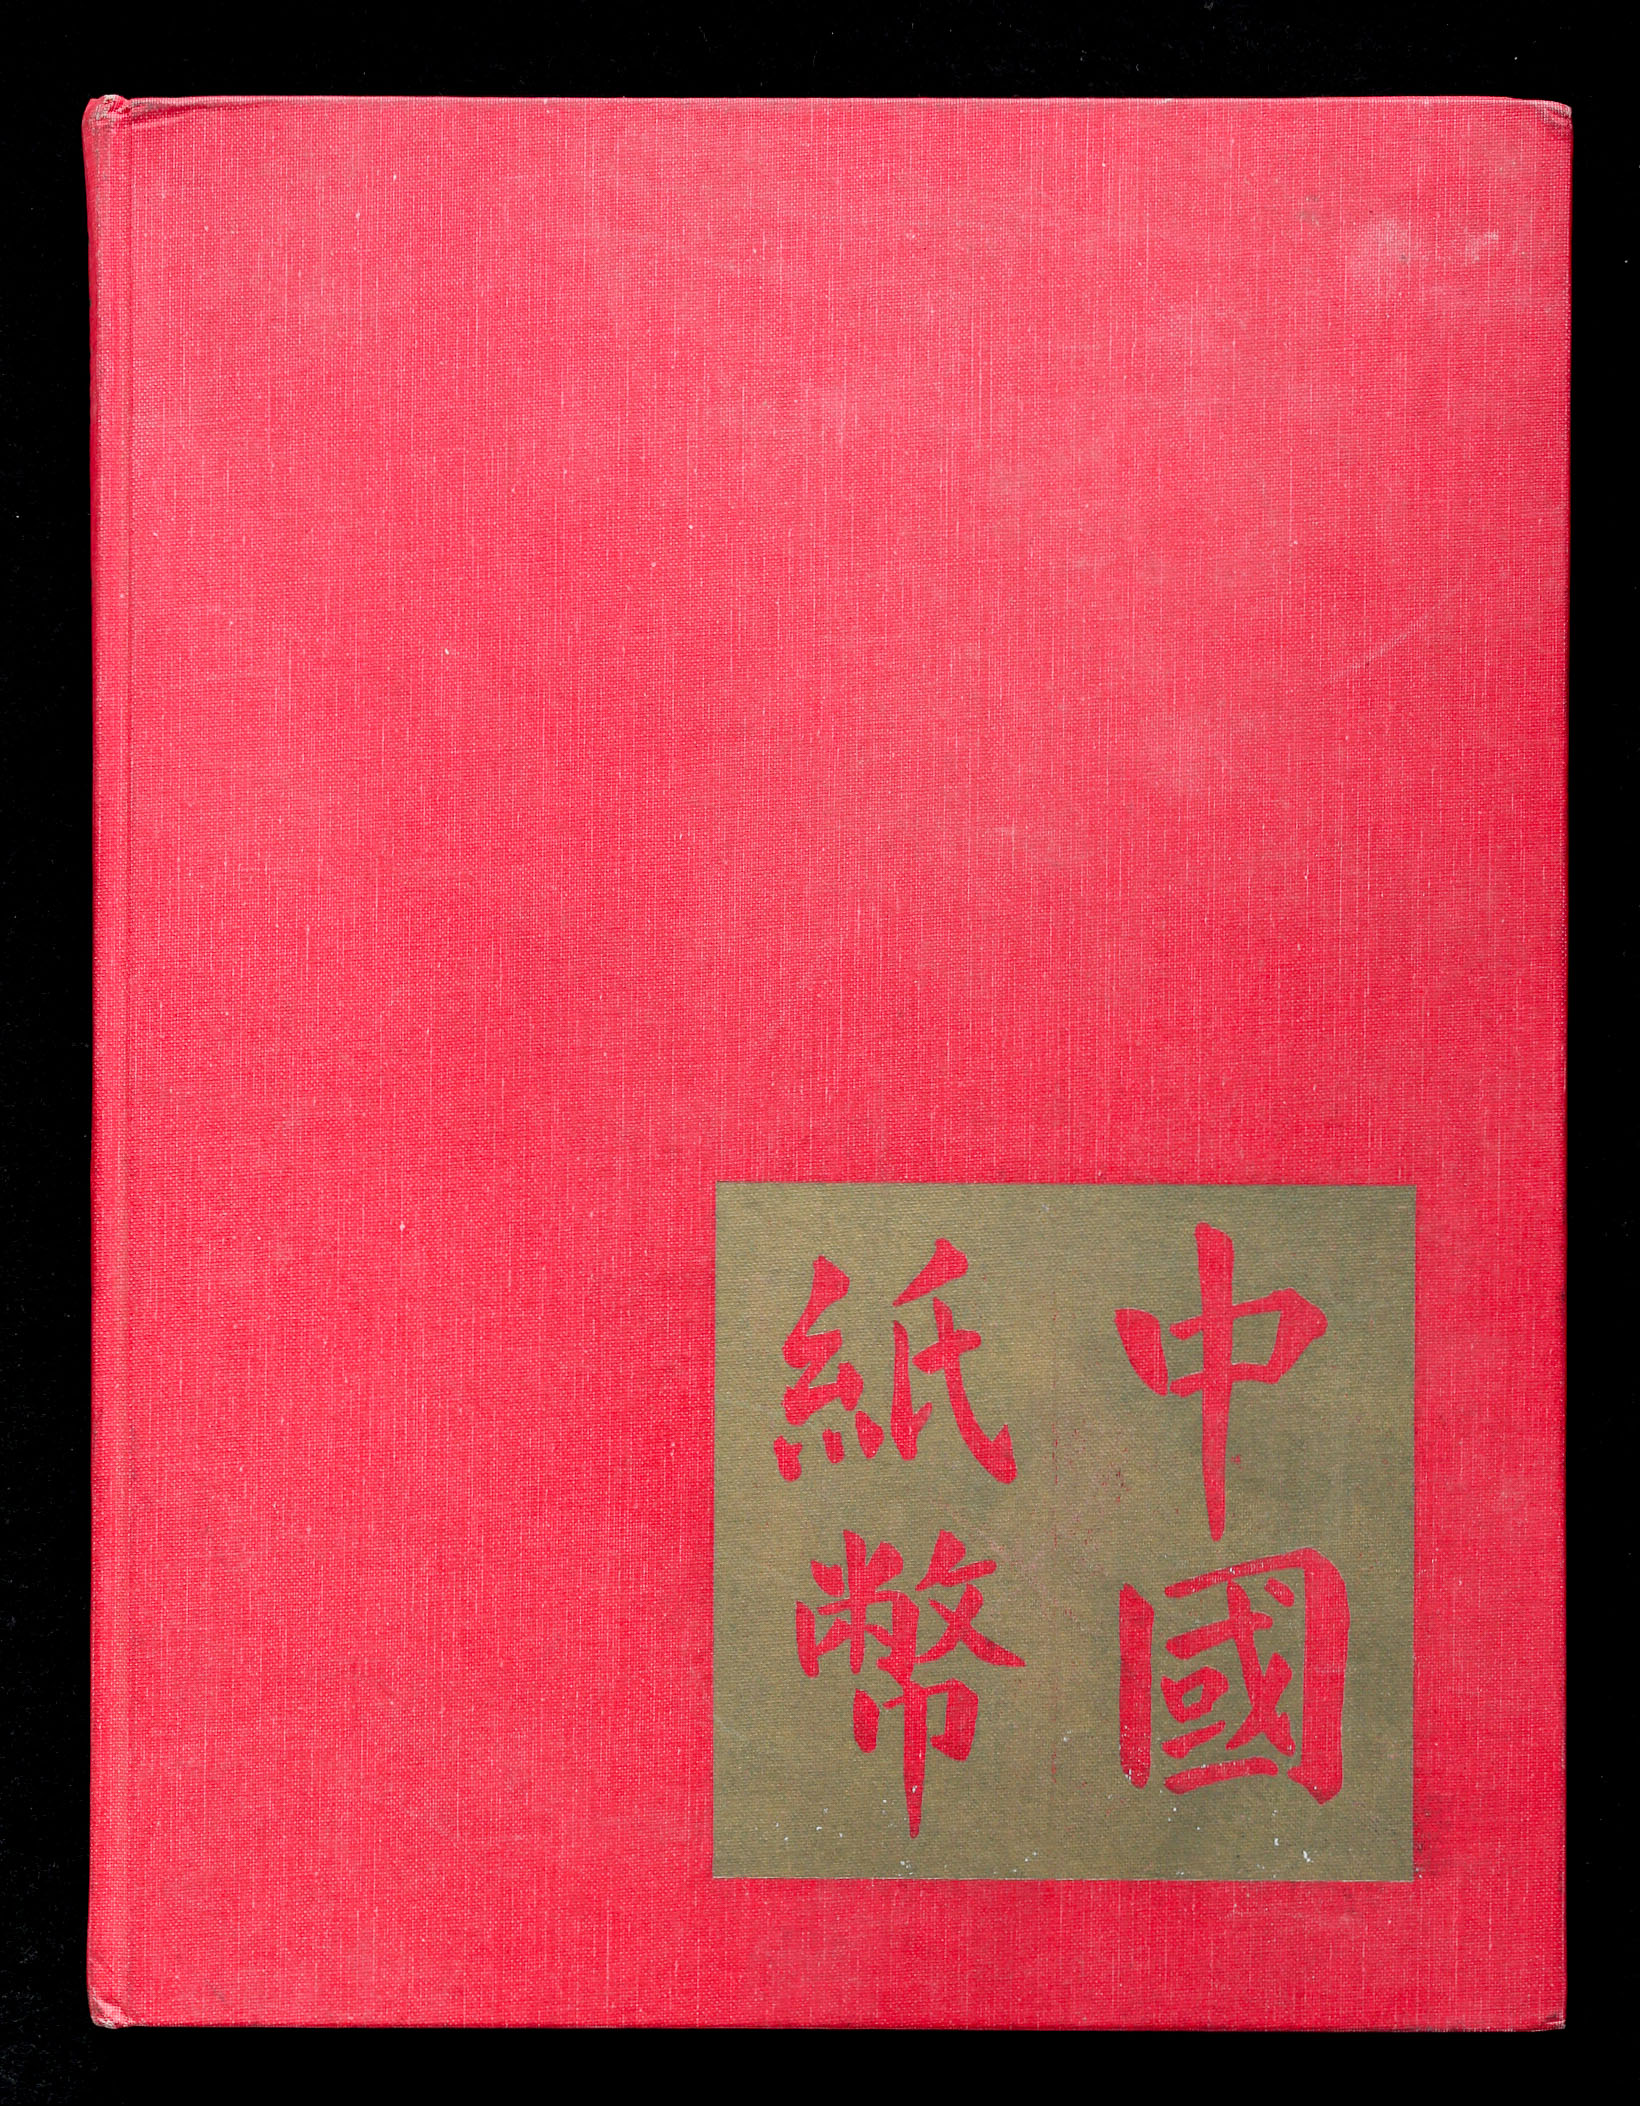 限时竞拍, Book 書籍『中国紙幣CHINESE BANKNOTES』Ward D. Smith 